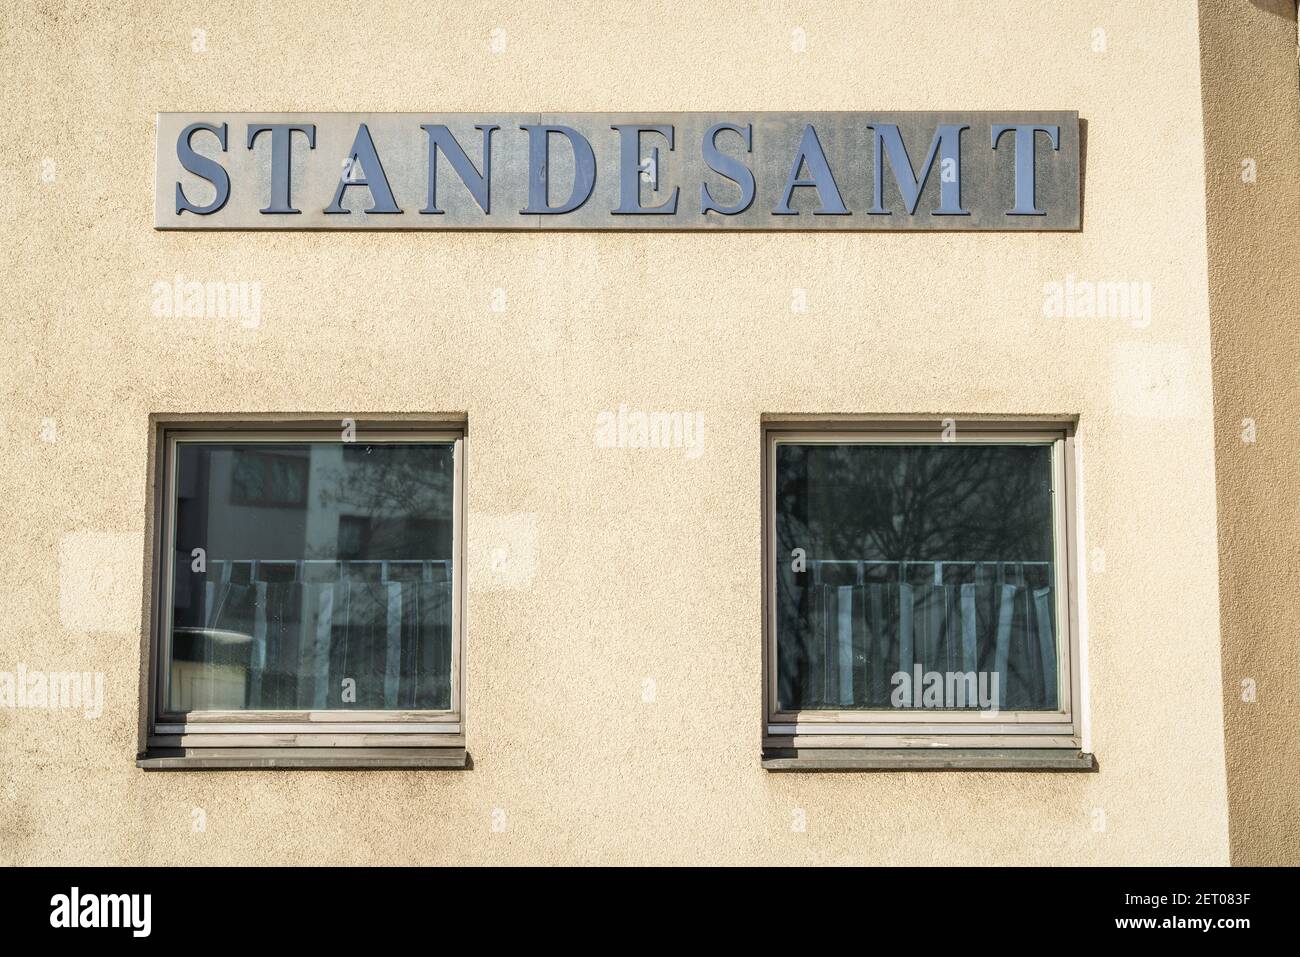 Standesamt Friedrichshain-Kreuzberg, Schlesische Strasse, schmucklose Fassade, Berlín Foto de stock